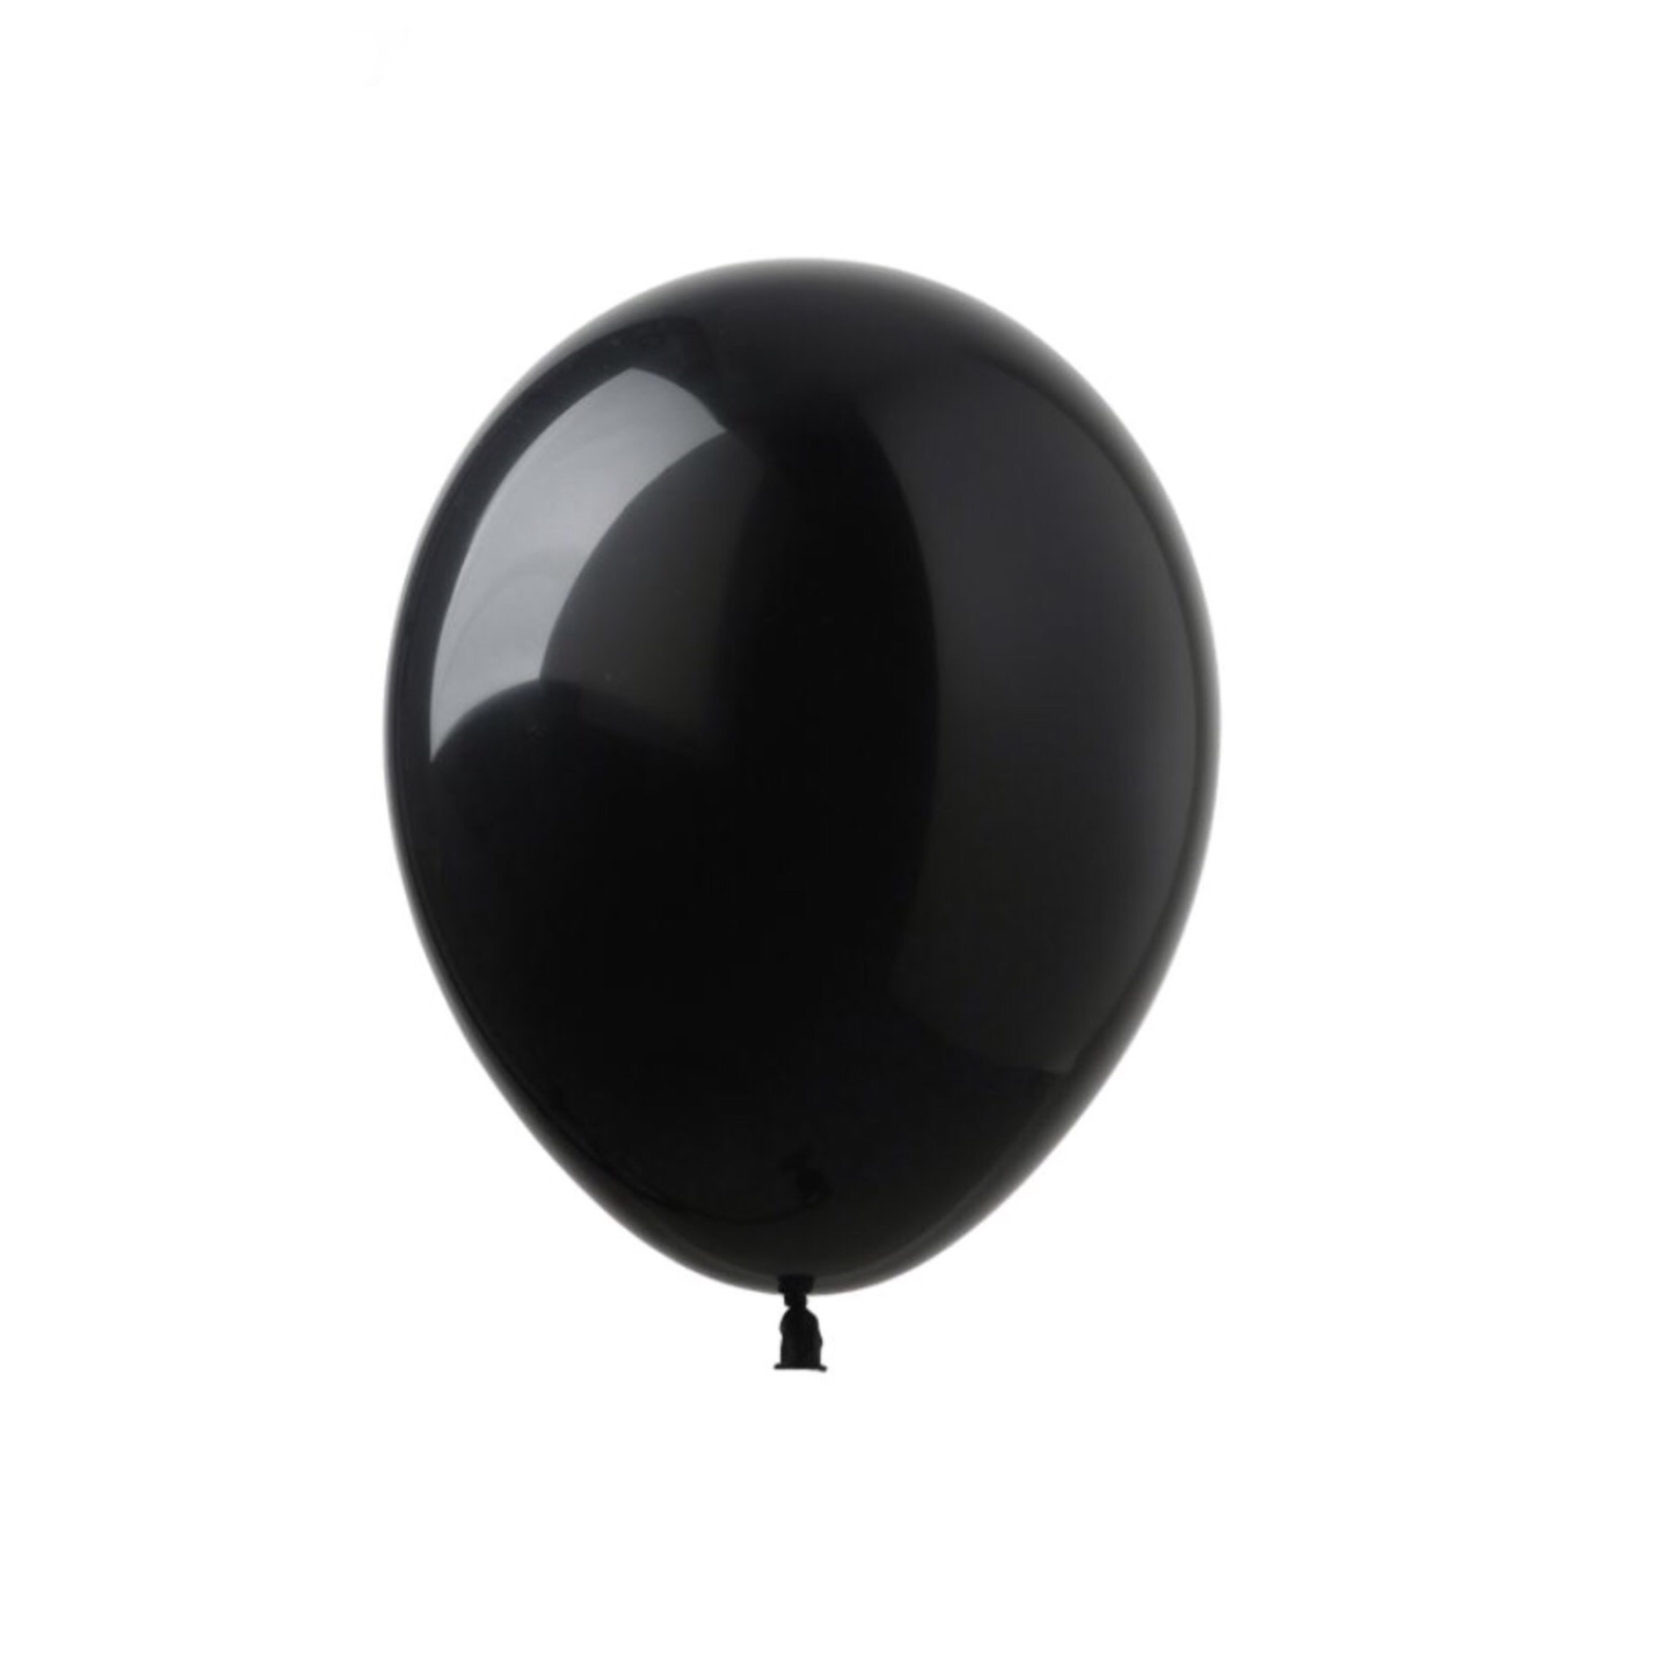 Черный воздушный шарик. “Черный шар” (the Black Balloon), 2008. Глянцевый шарик. Шар черный латексный. Черный воздушный шар.